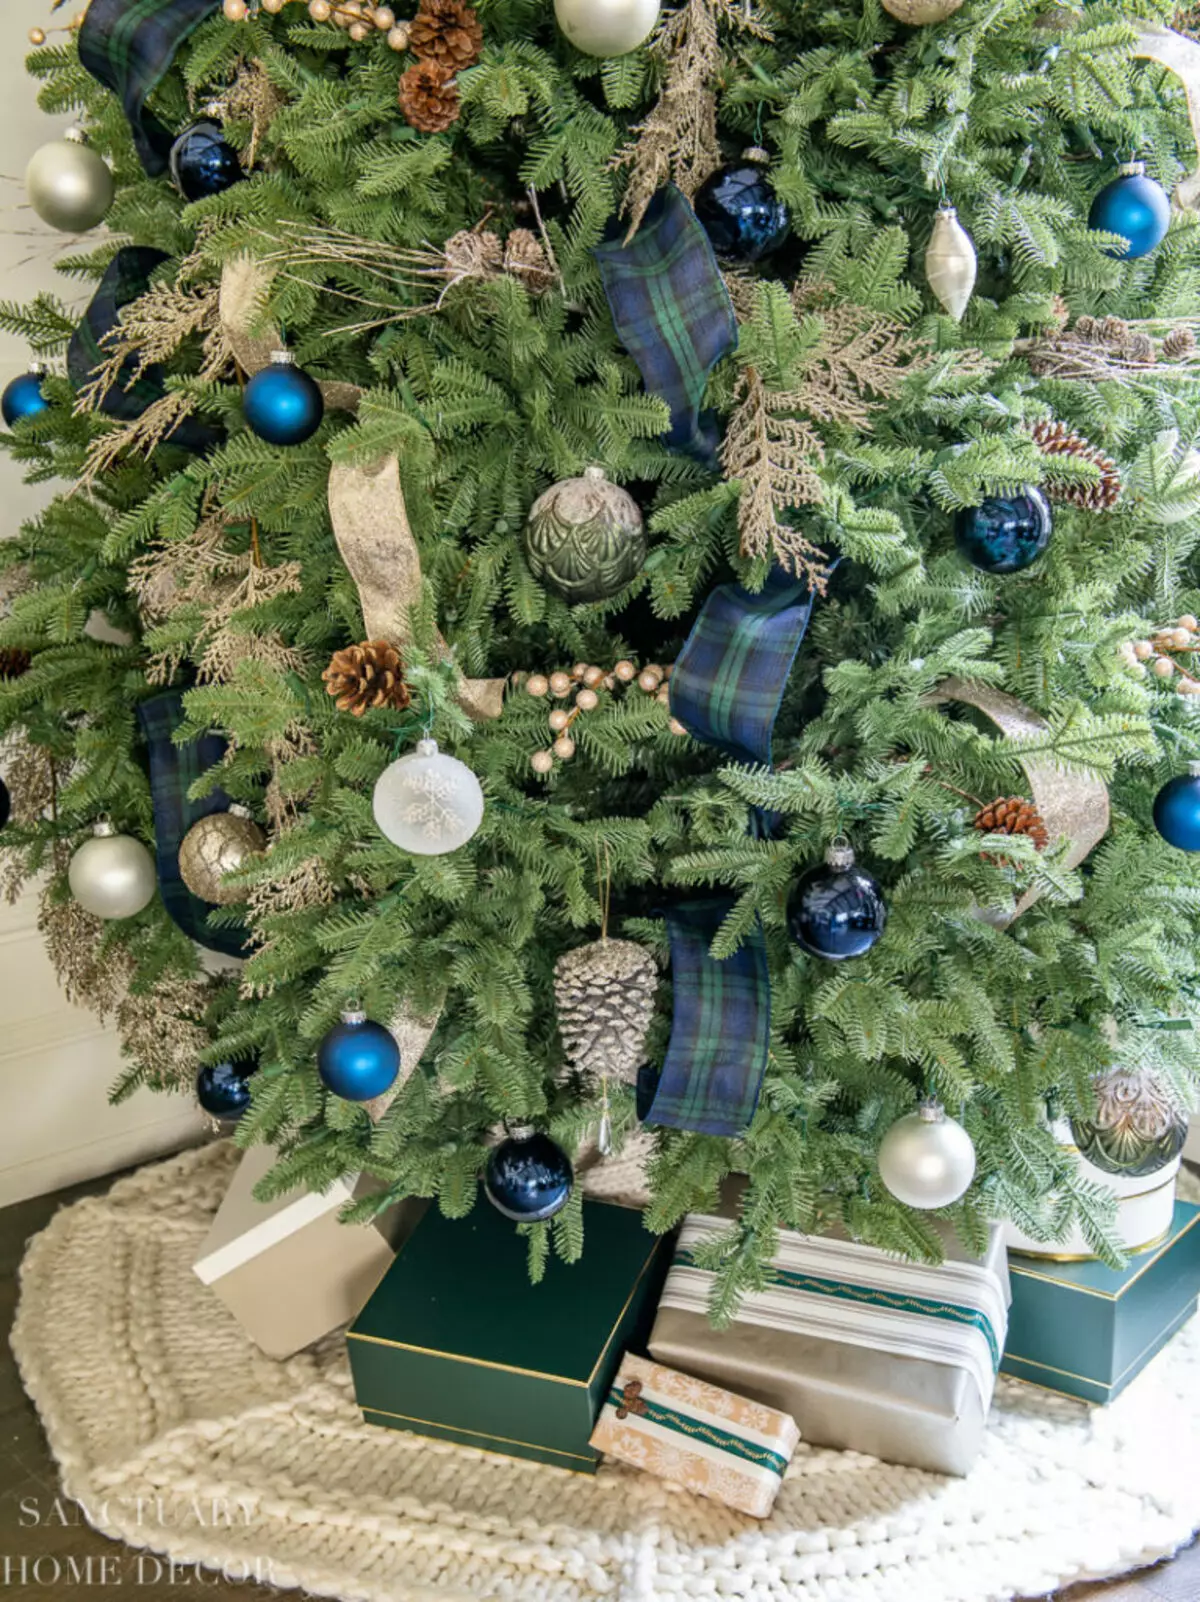 Làm thế nào để trang trí cây Giáng sinh màu xanh lam? 30 ảnh Làm thế nào để ăn mặc với những quả bóng và các trang trí khác trong tông màu xanh và bạc? 7627_16